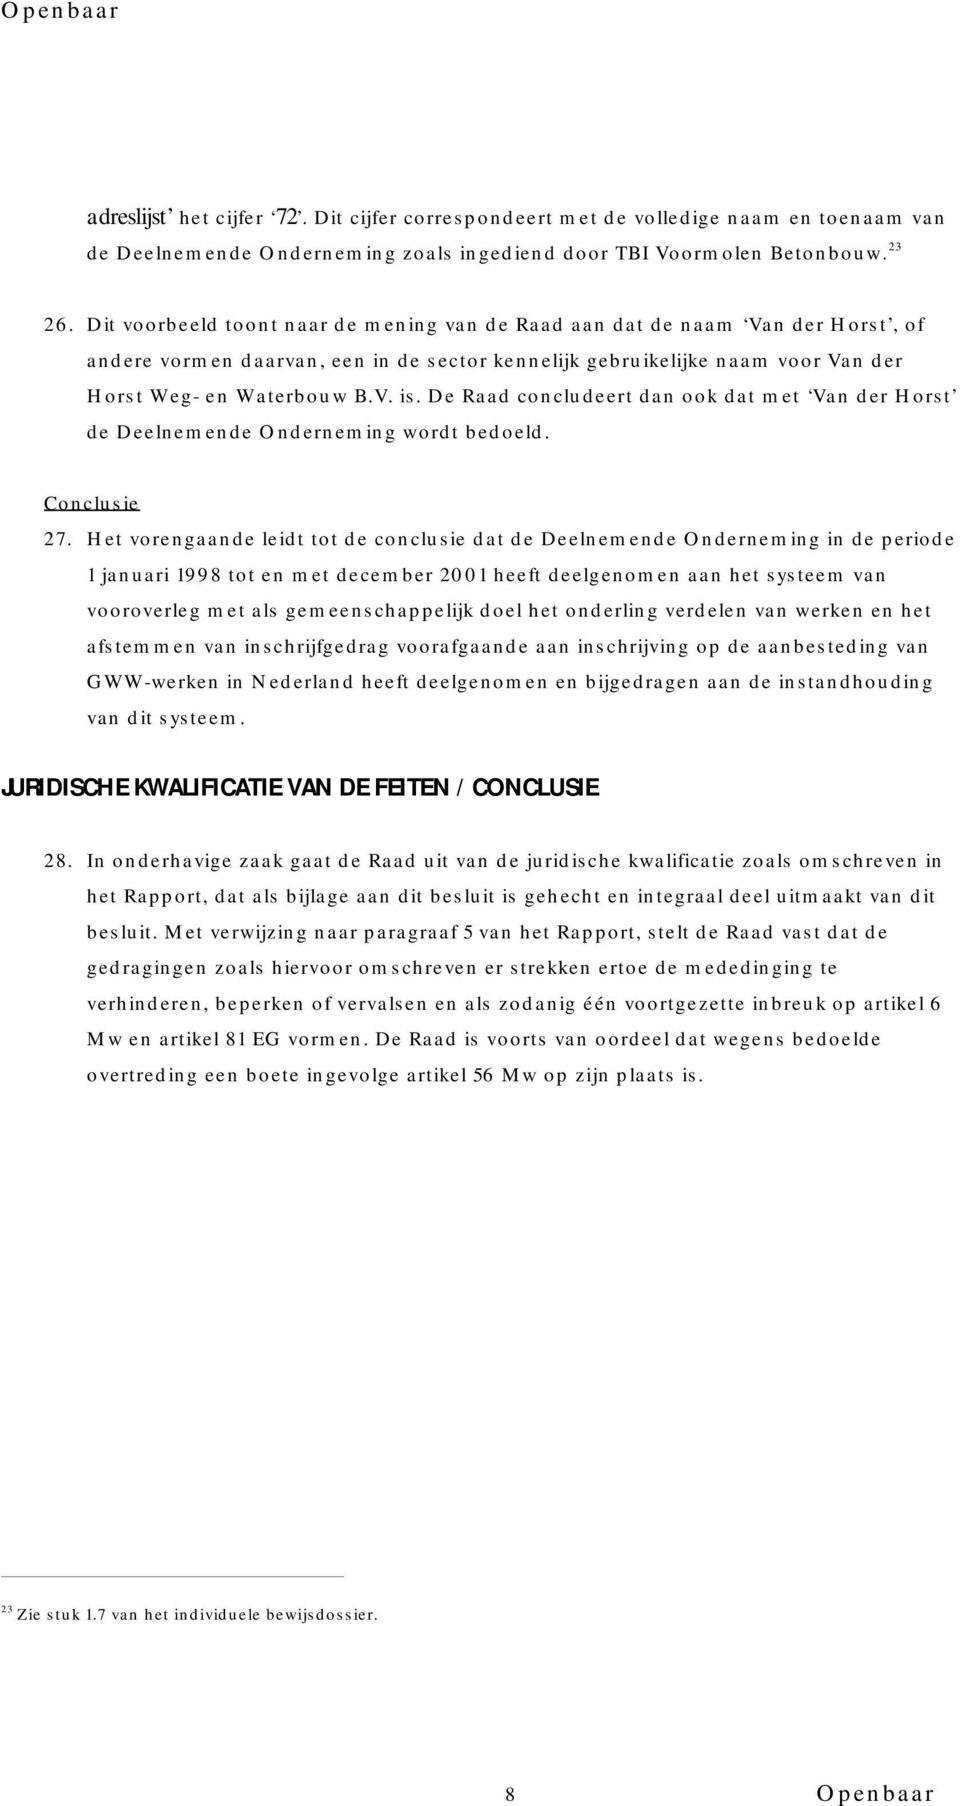 De Raad concludeert dan ook dat met Van der Horst de Deelnemende Onderneming wordt bedoeld. Conclusie 27.